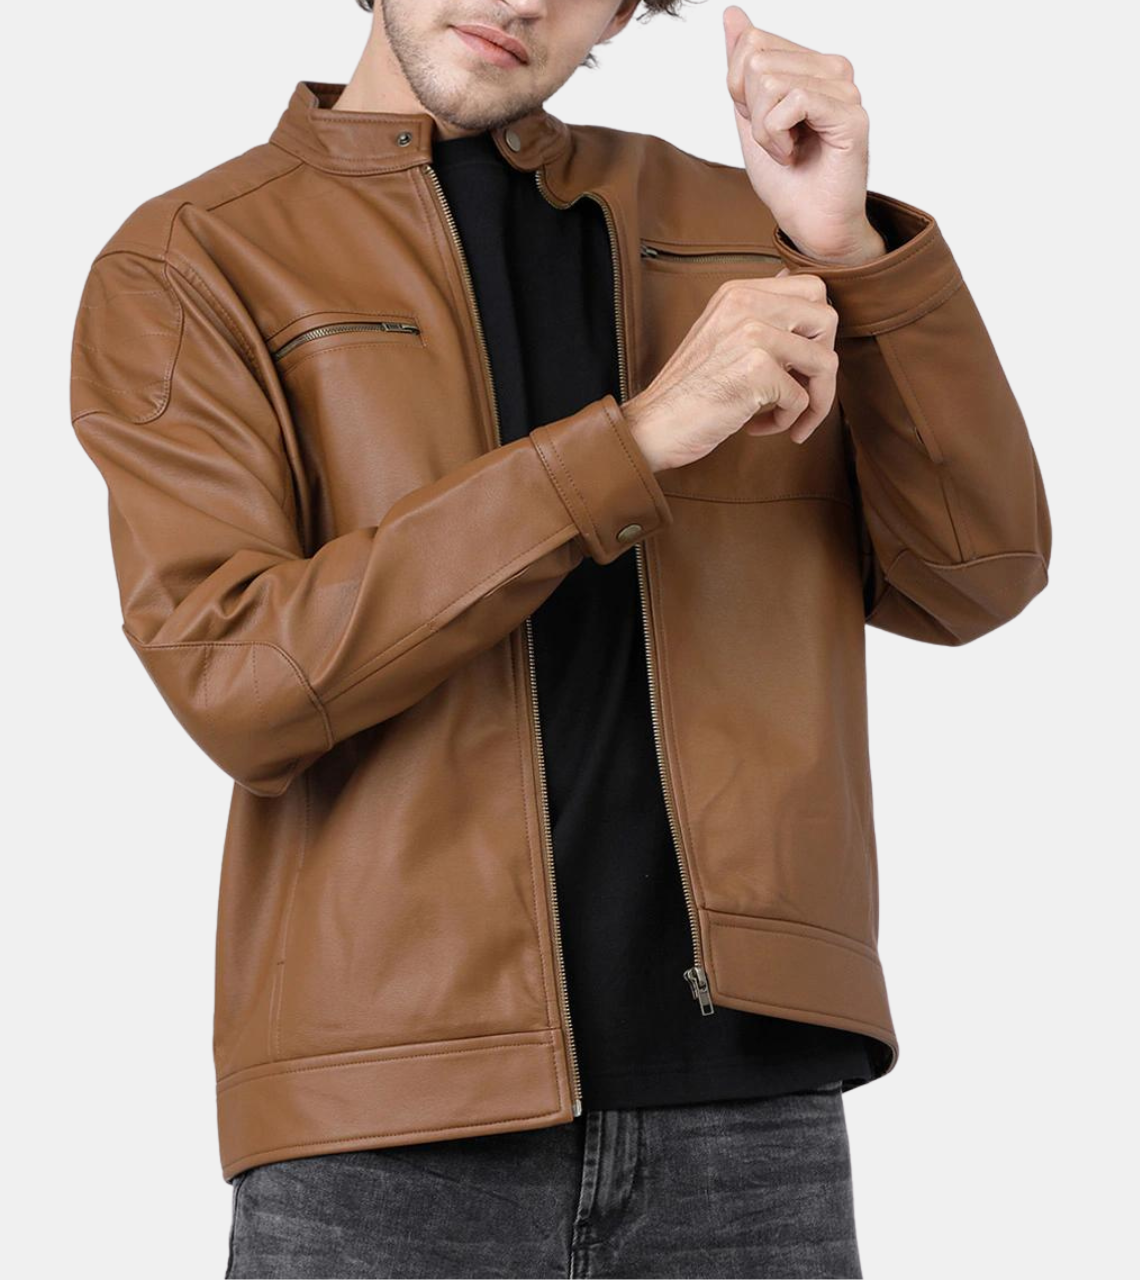  Jullian Men's Tan Brown Leather Jacket 